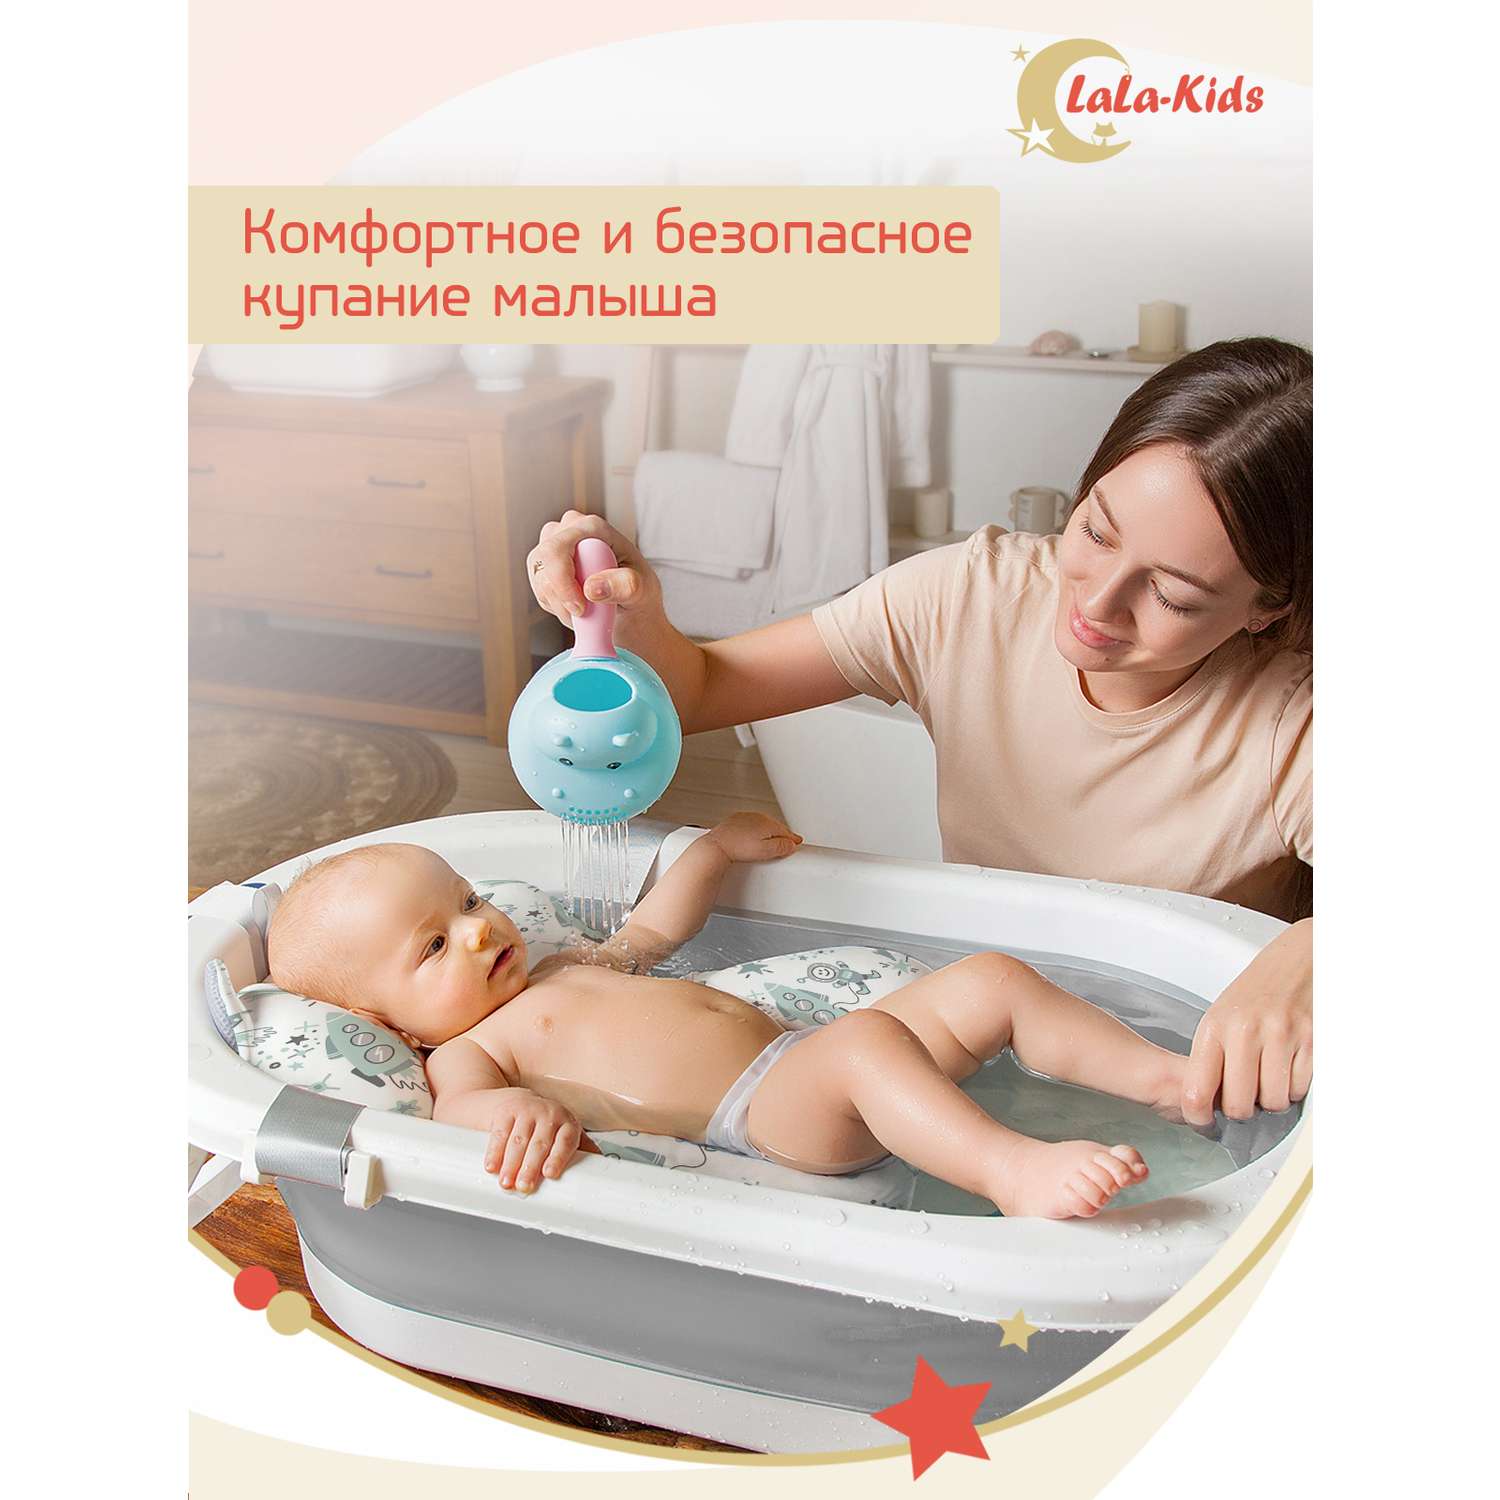 Складная ванночка LaLa-Kids для купания новорожденных с термометром и матрасиком в комплекте - фото 2